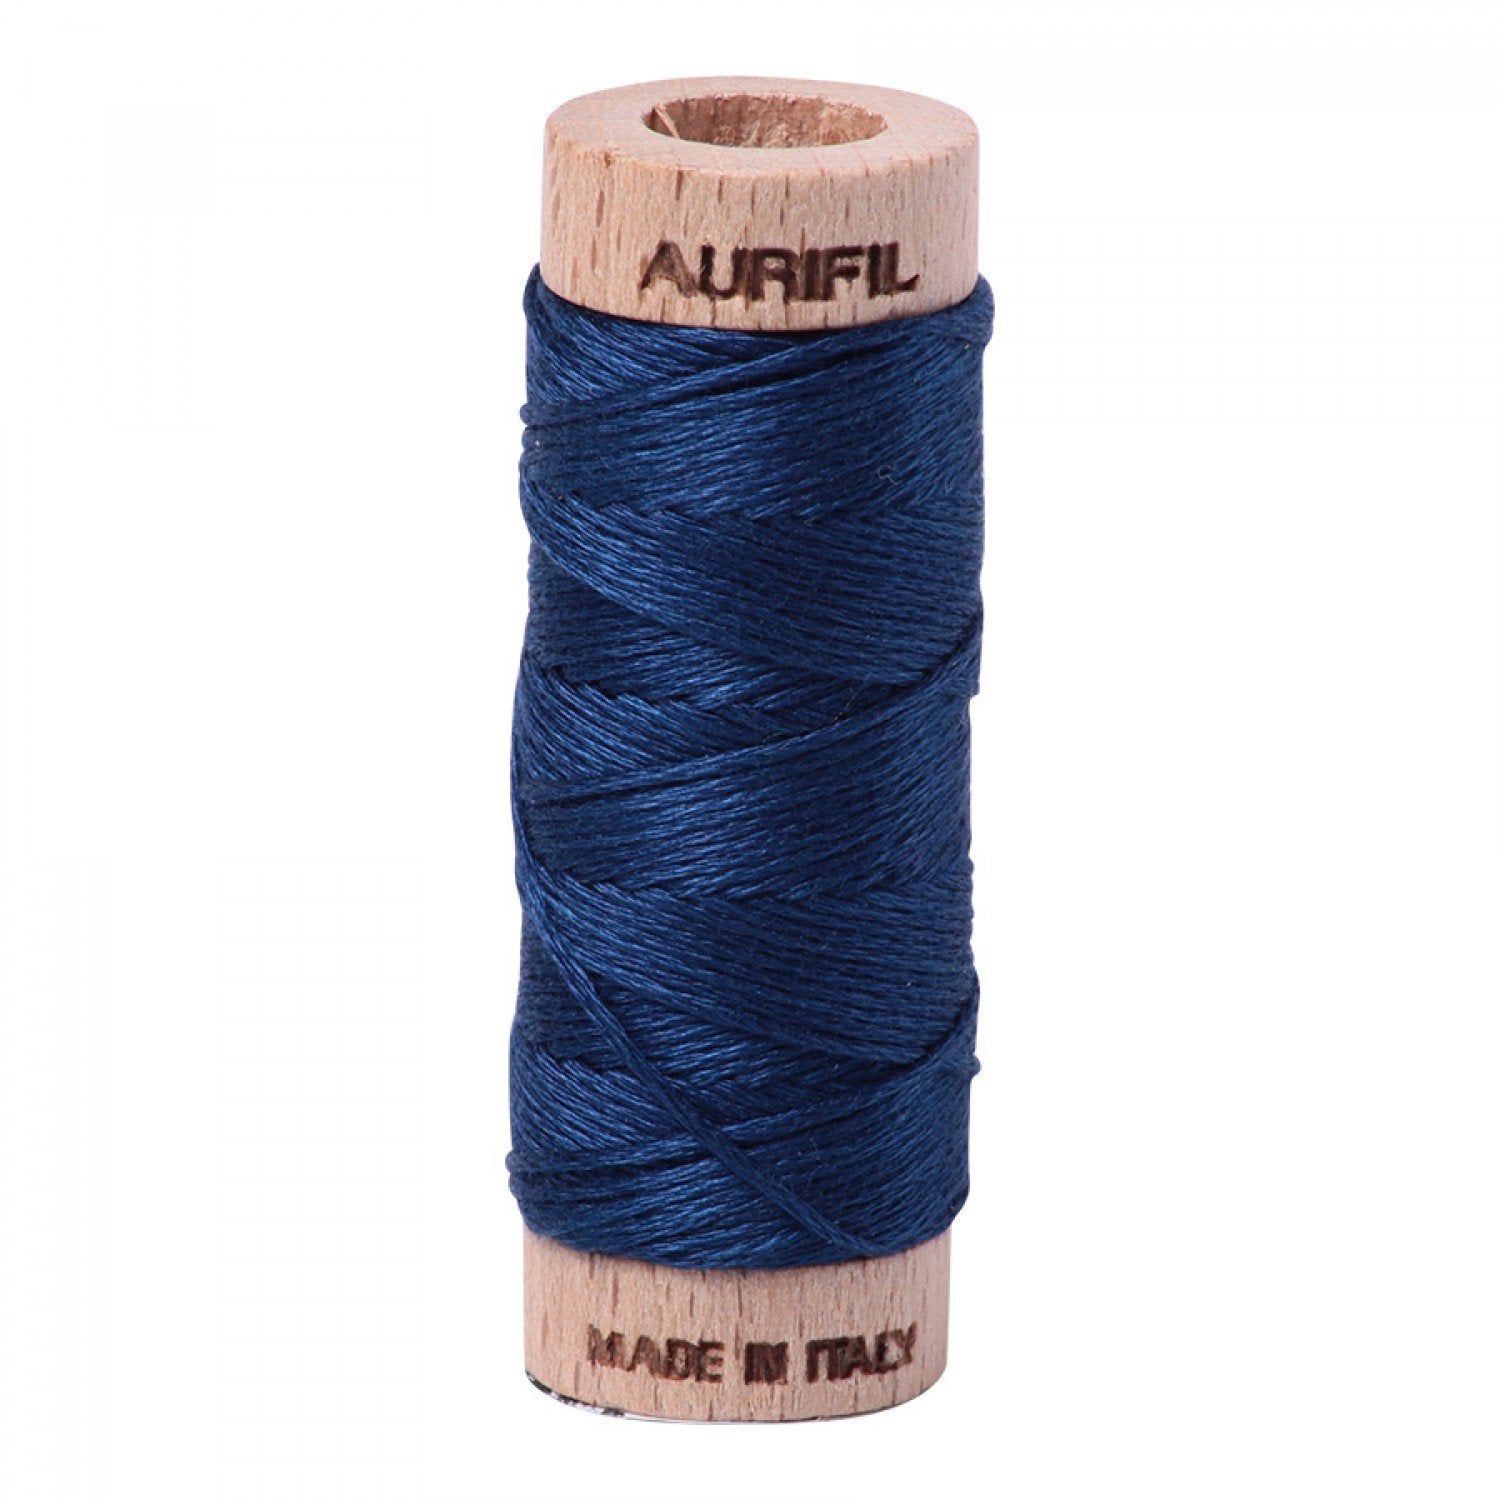 Aurifloss 6-strand Floss, Medium Delft Blue, 2783